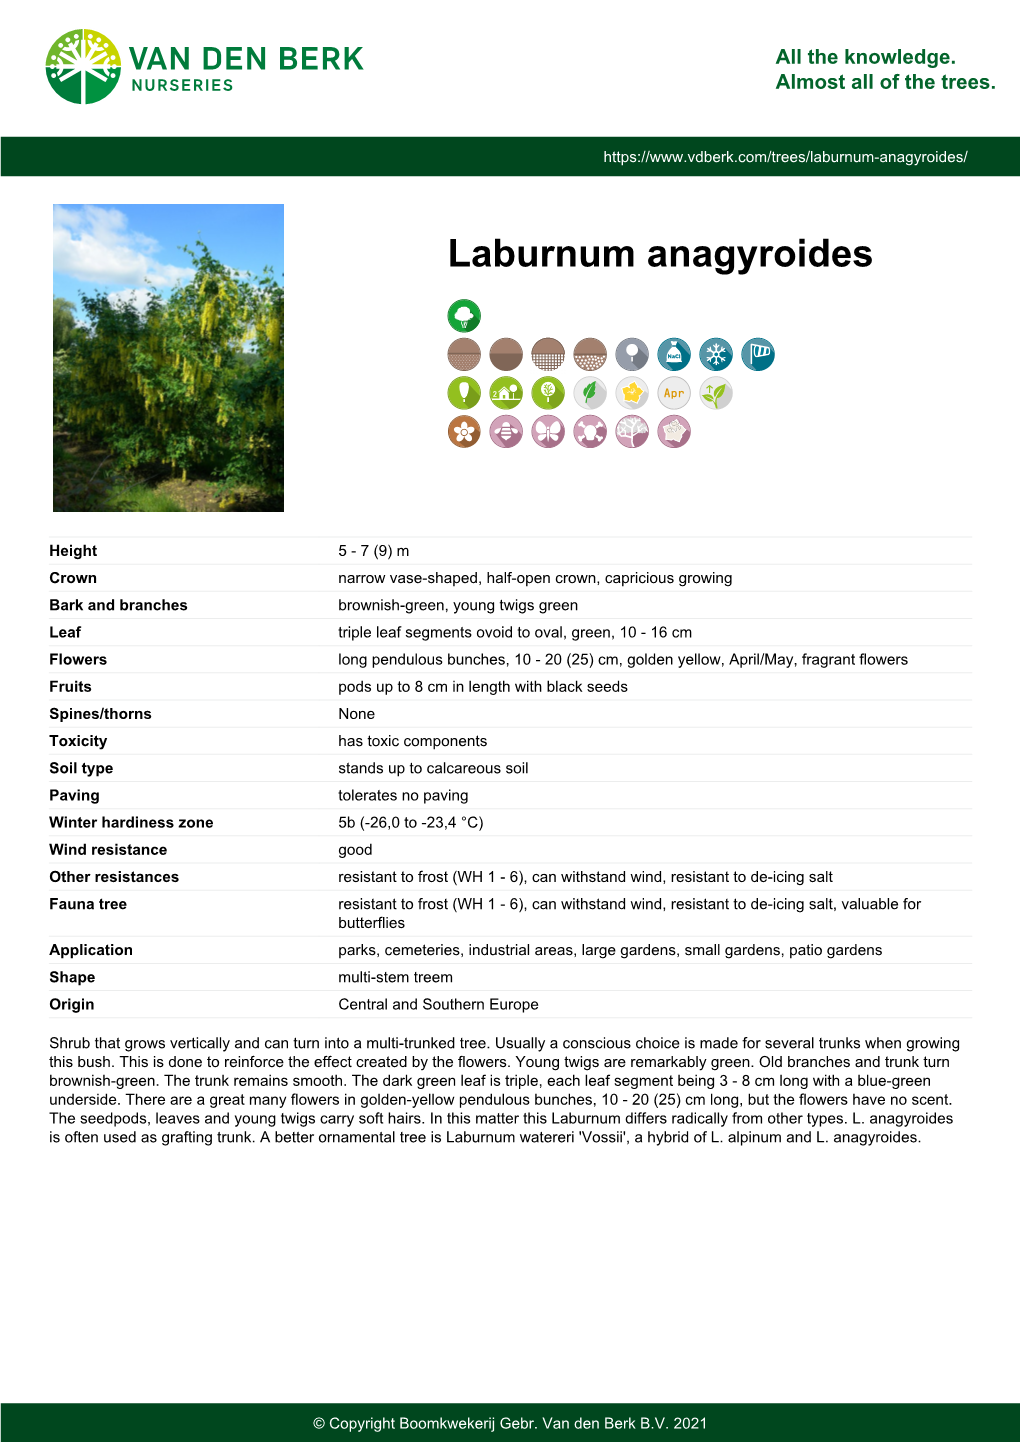 Laburnum Anagyroides